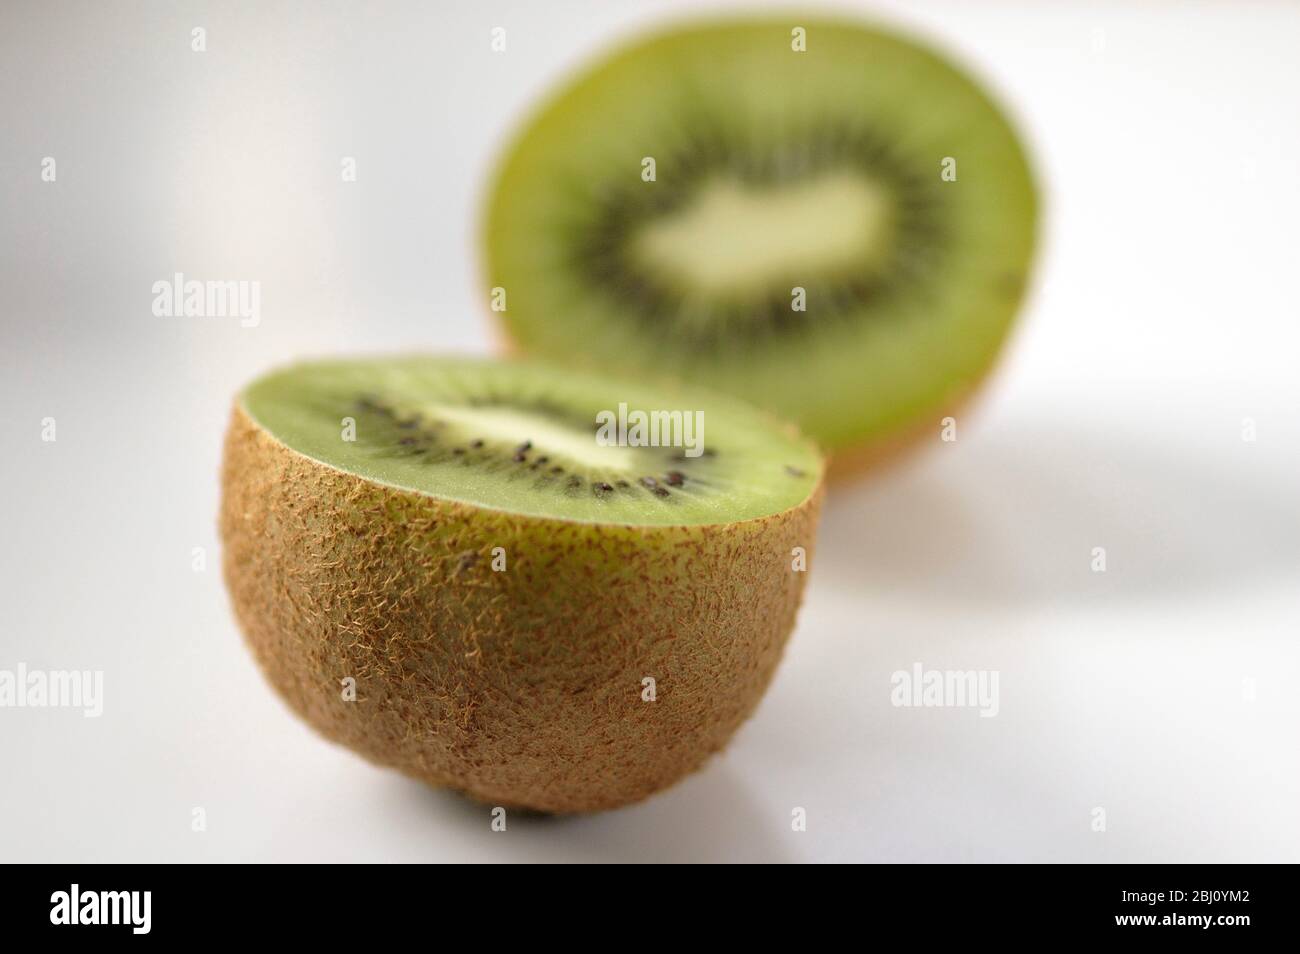 Kiwi-Frucht halbiert, um innere Textur und Struktur auf weißer Keramik-Oberfläche zu zeigen - Stockfoto